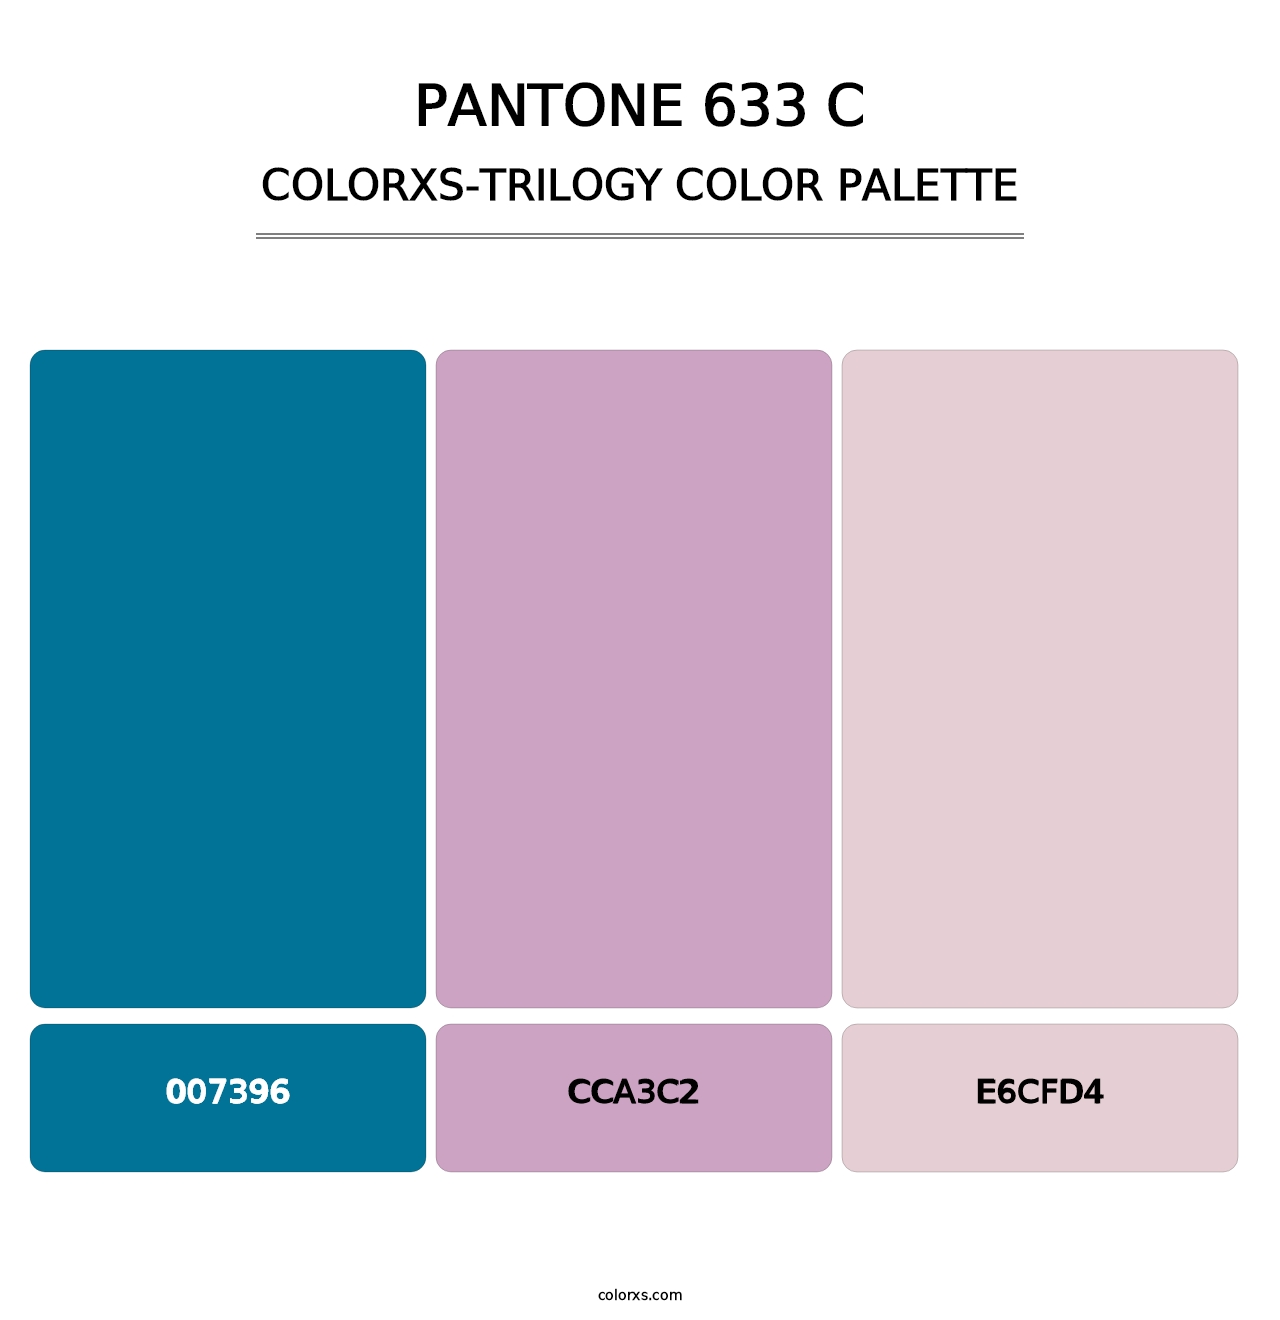 PANTONE 633 C - Colorxs Trilogy Palette